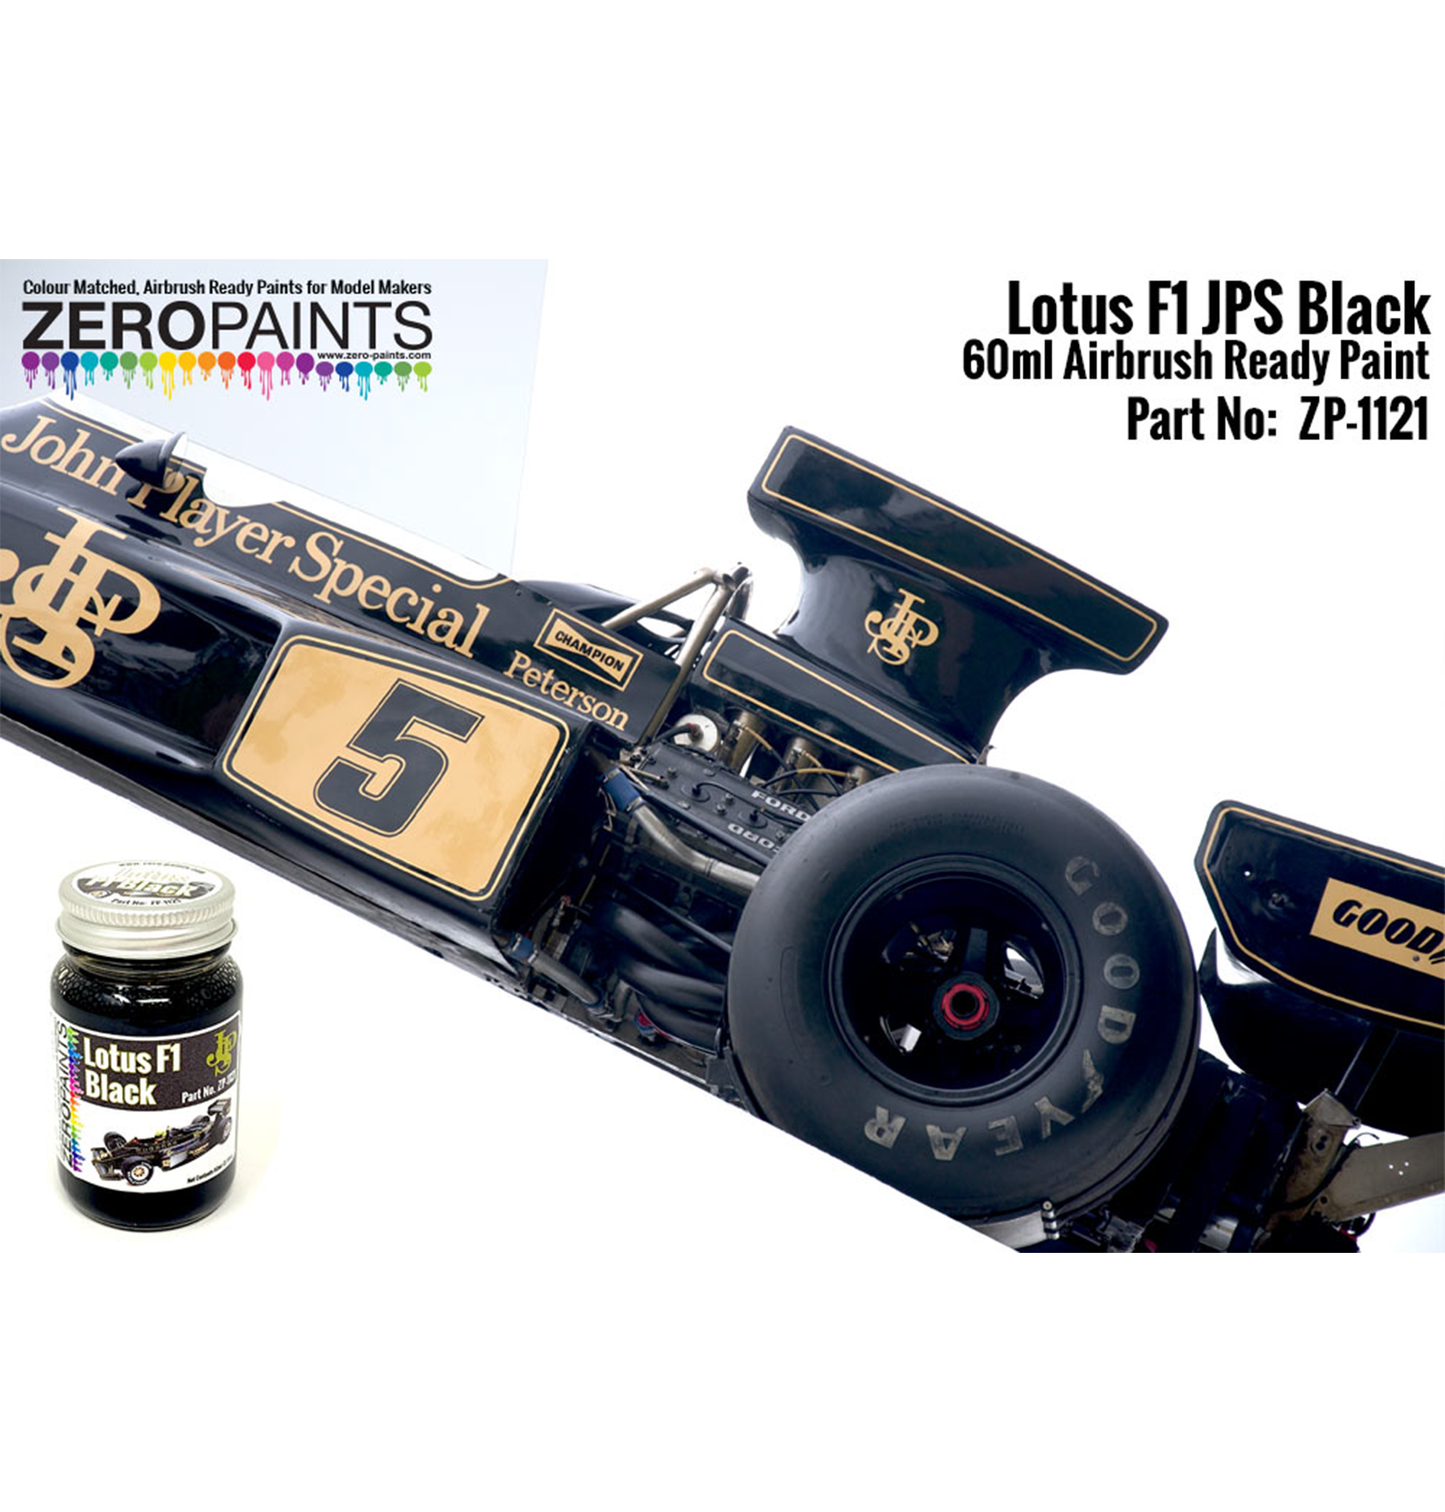 Zeropaints ZP-1121 "Lotus F1 JPS Black"